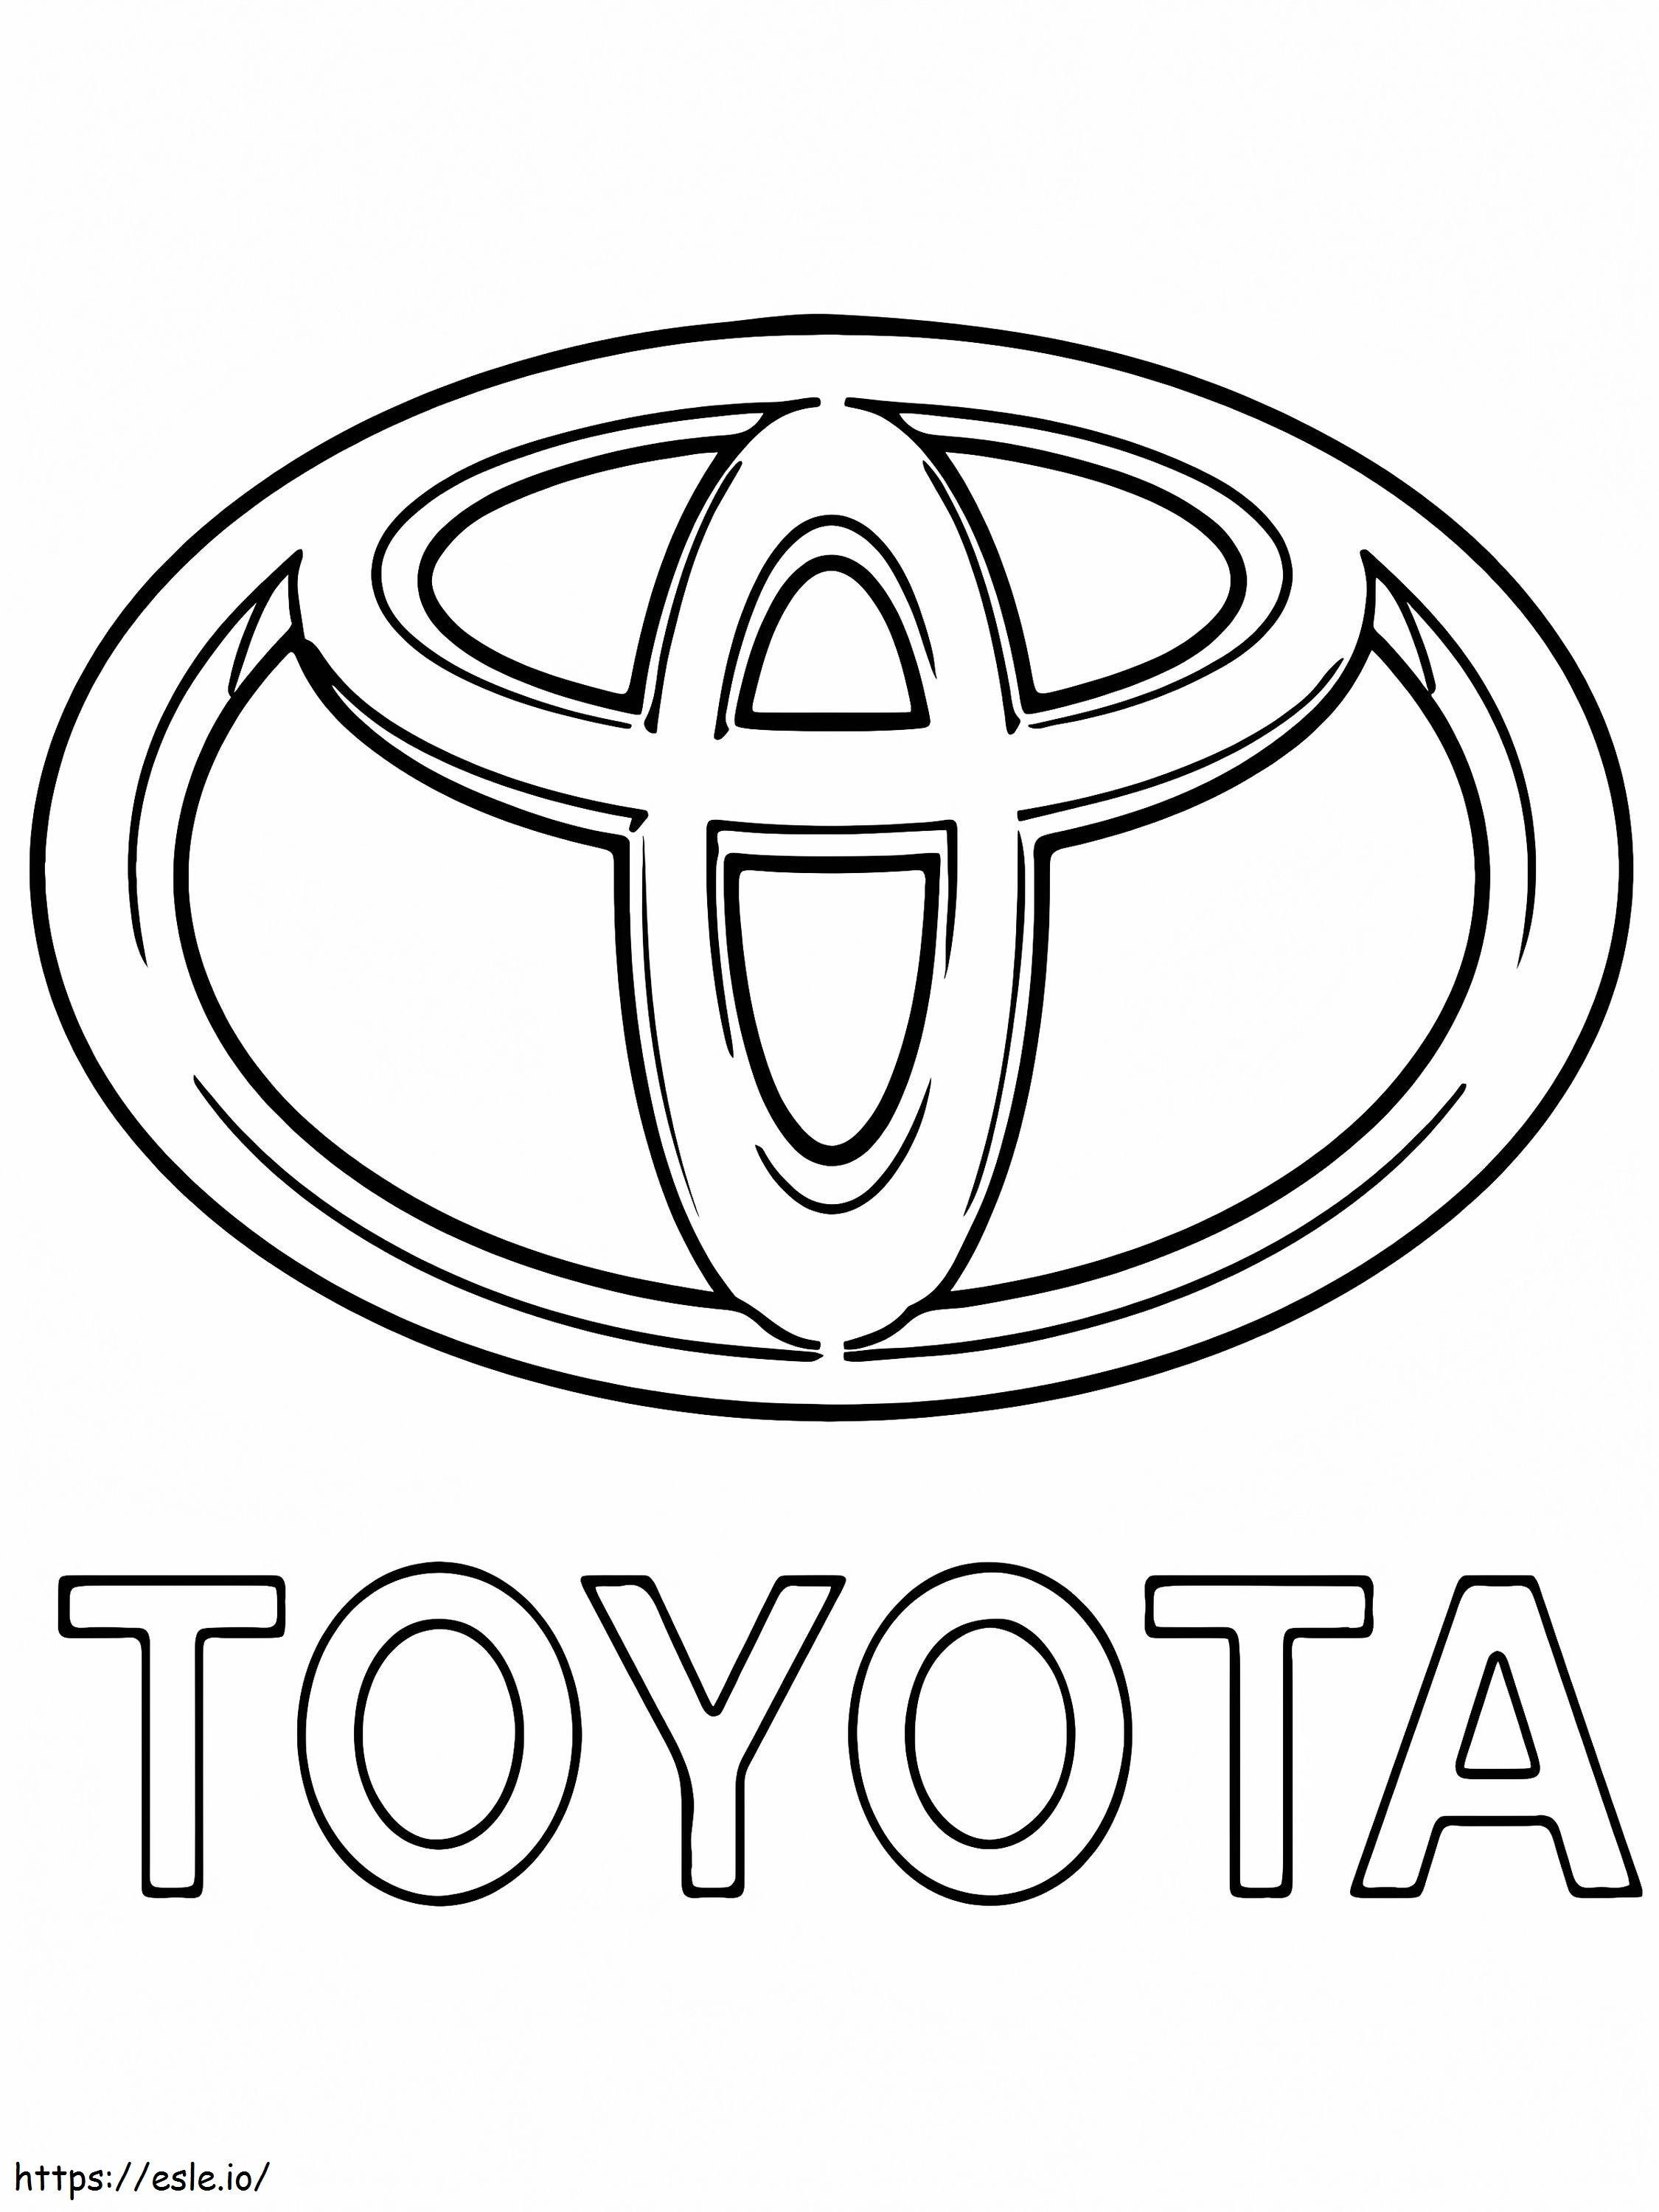 Logo samochodu Toyoty kolorowanka